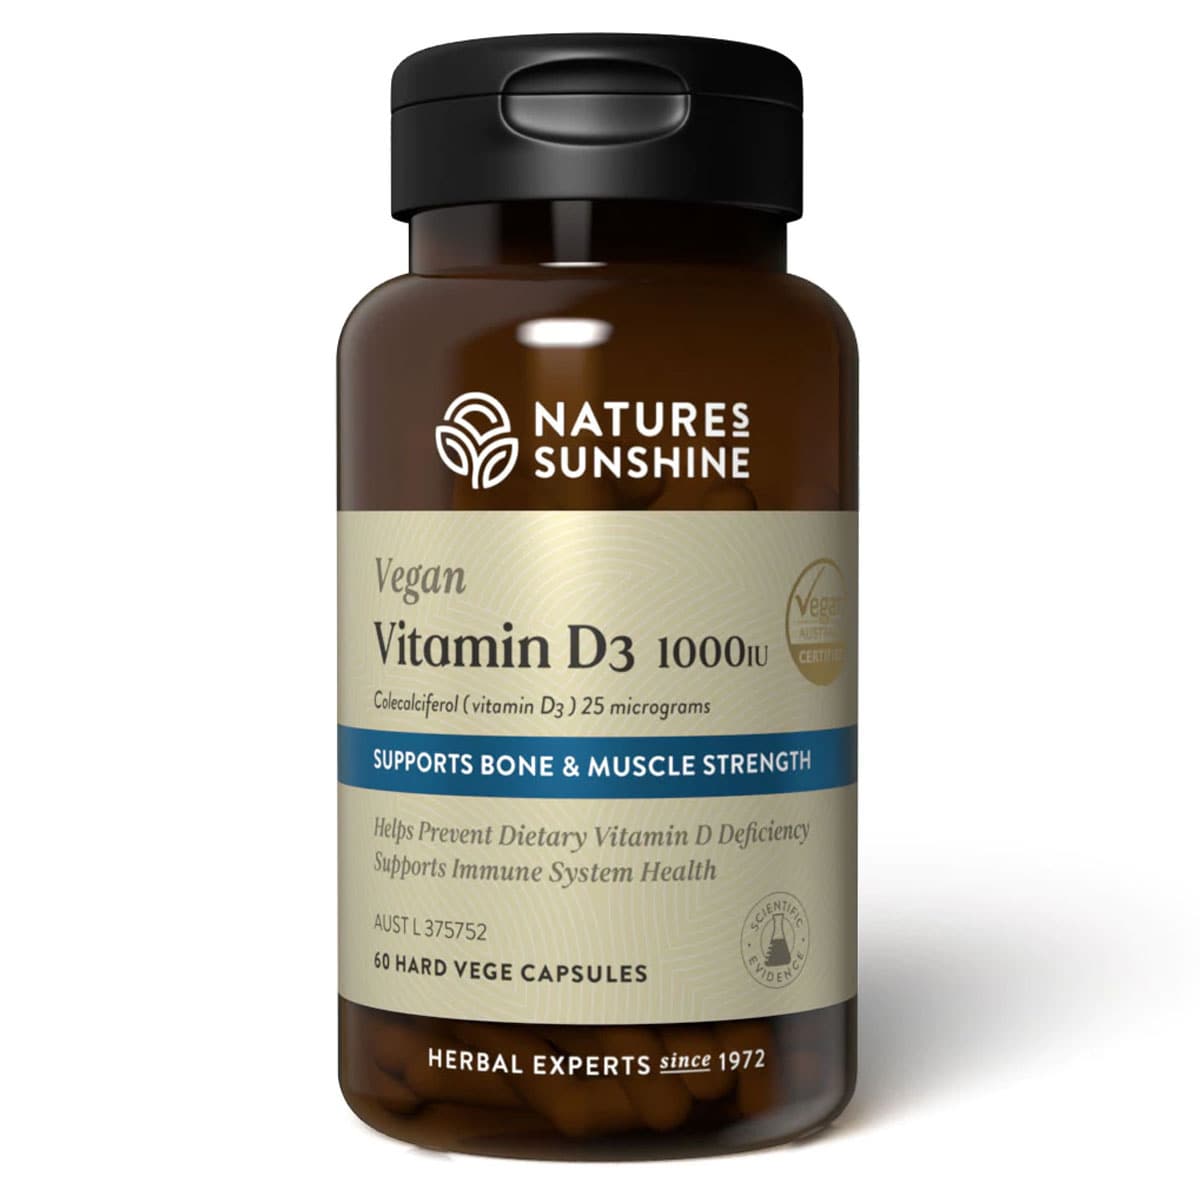 Natures Sunshine Vegan Vitamin D3 1000 IU 60 Capsules